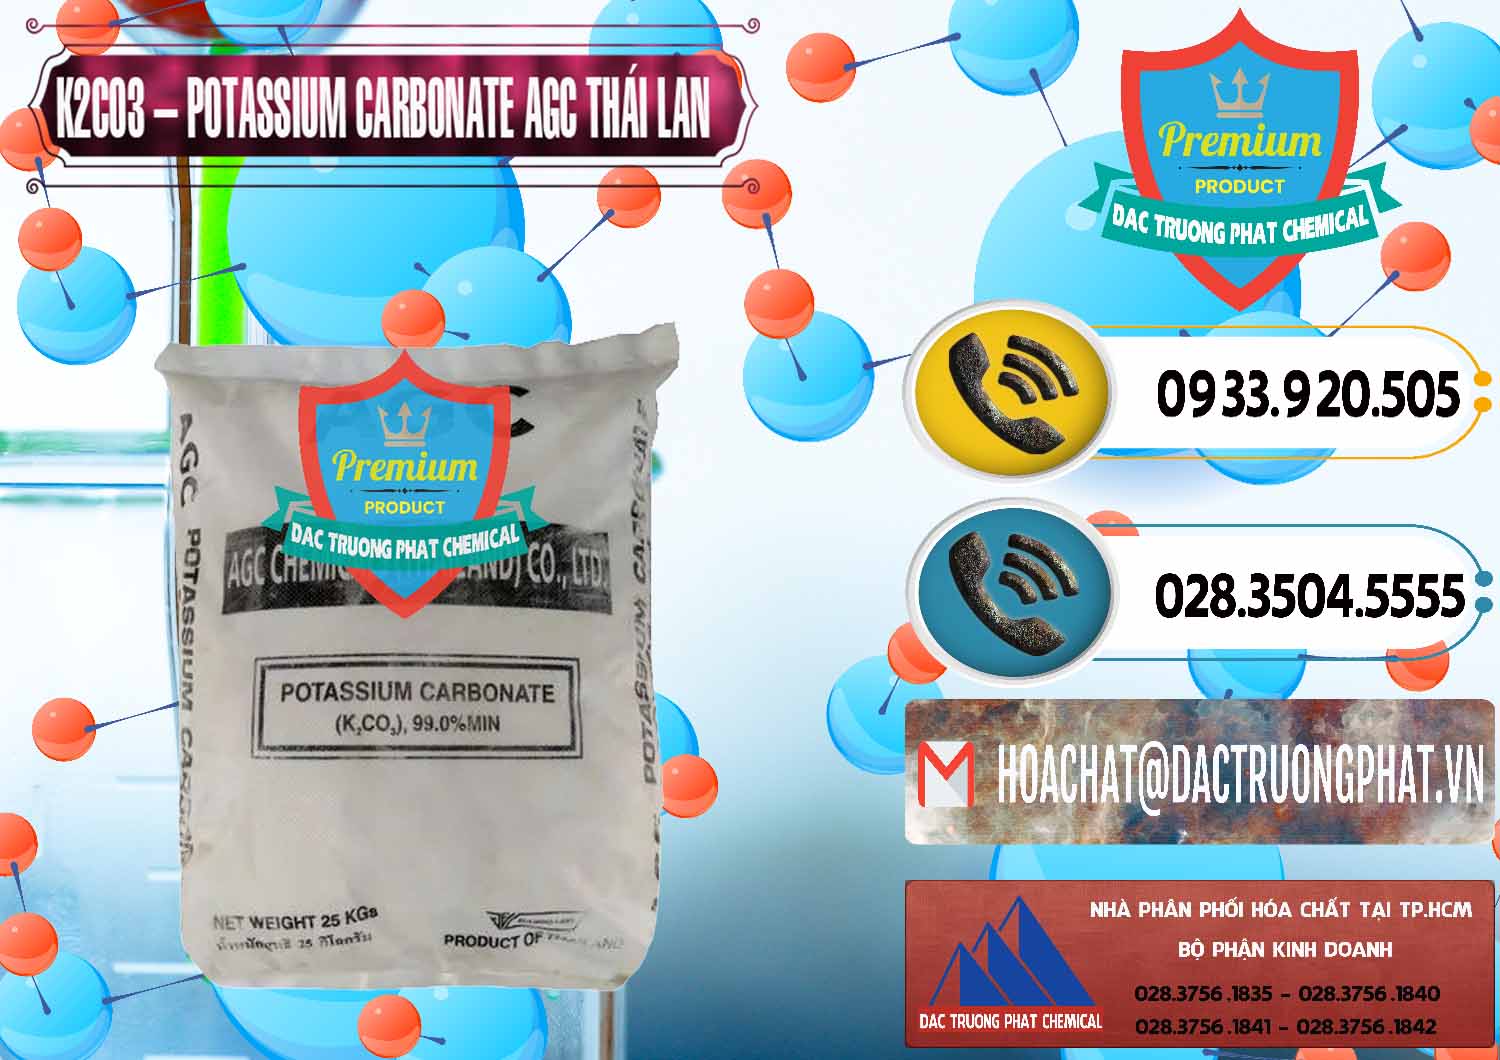 Công ty cung cấp - bán K2Co3 – Potassium Carbonate AGC Thái Lan Thailand - 0471 - Công ty bán - phân phối hóa chất tại TP.HCM - hoachatdetnhuom.vn